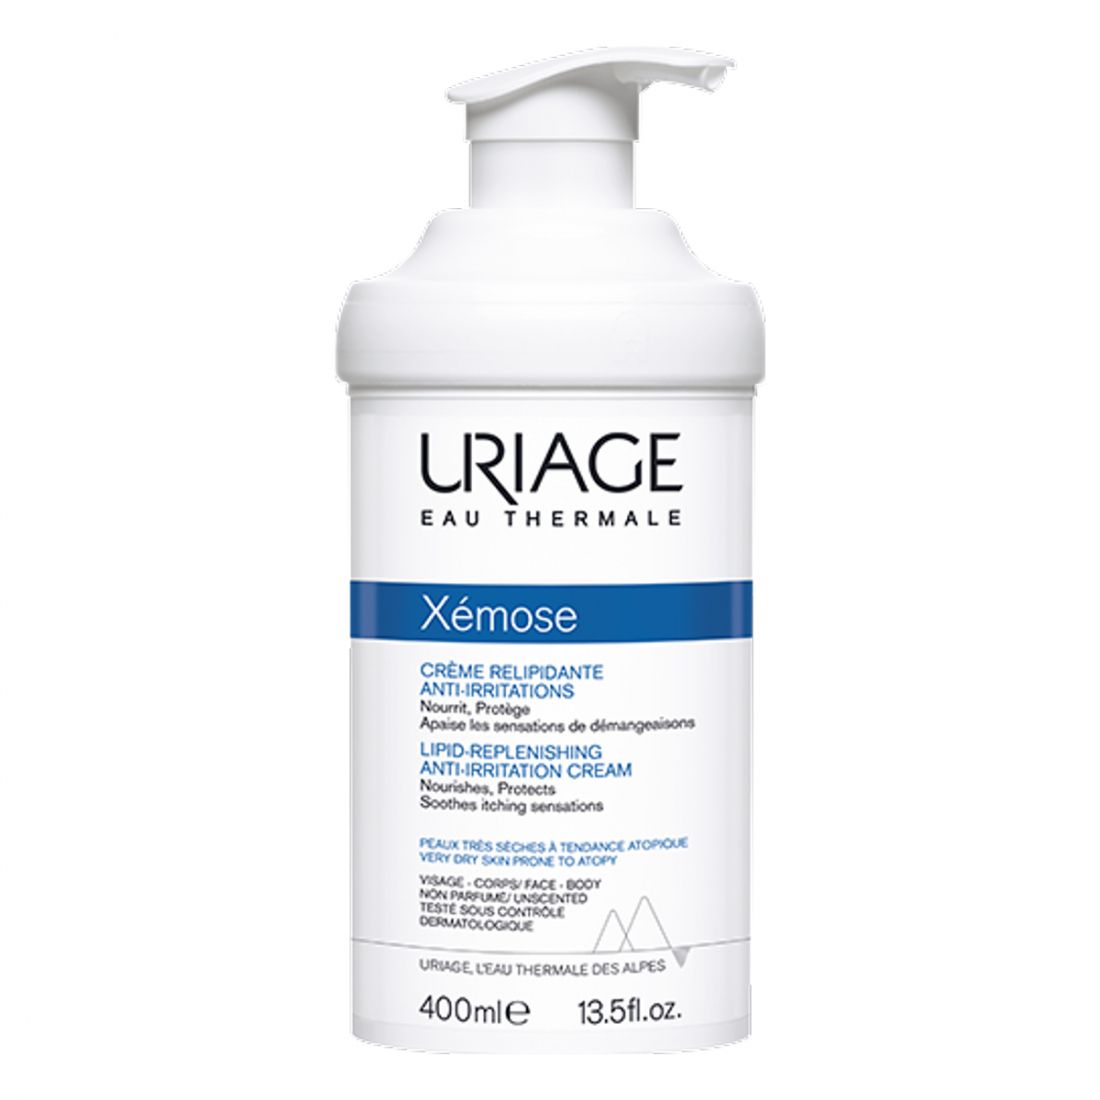 Uriage - 'Xémose' Crème Relipidante AntiIrritations - 400 ml